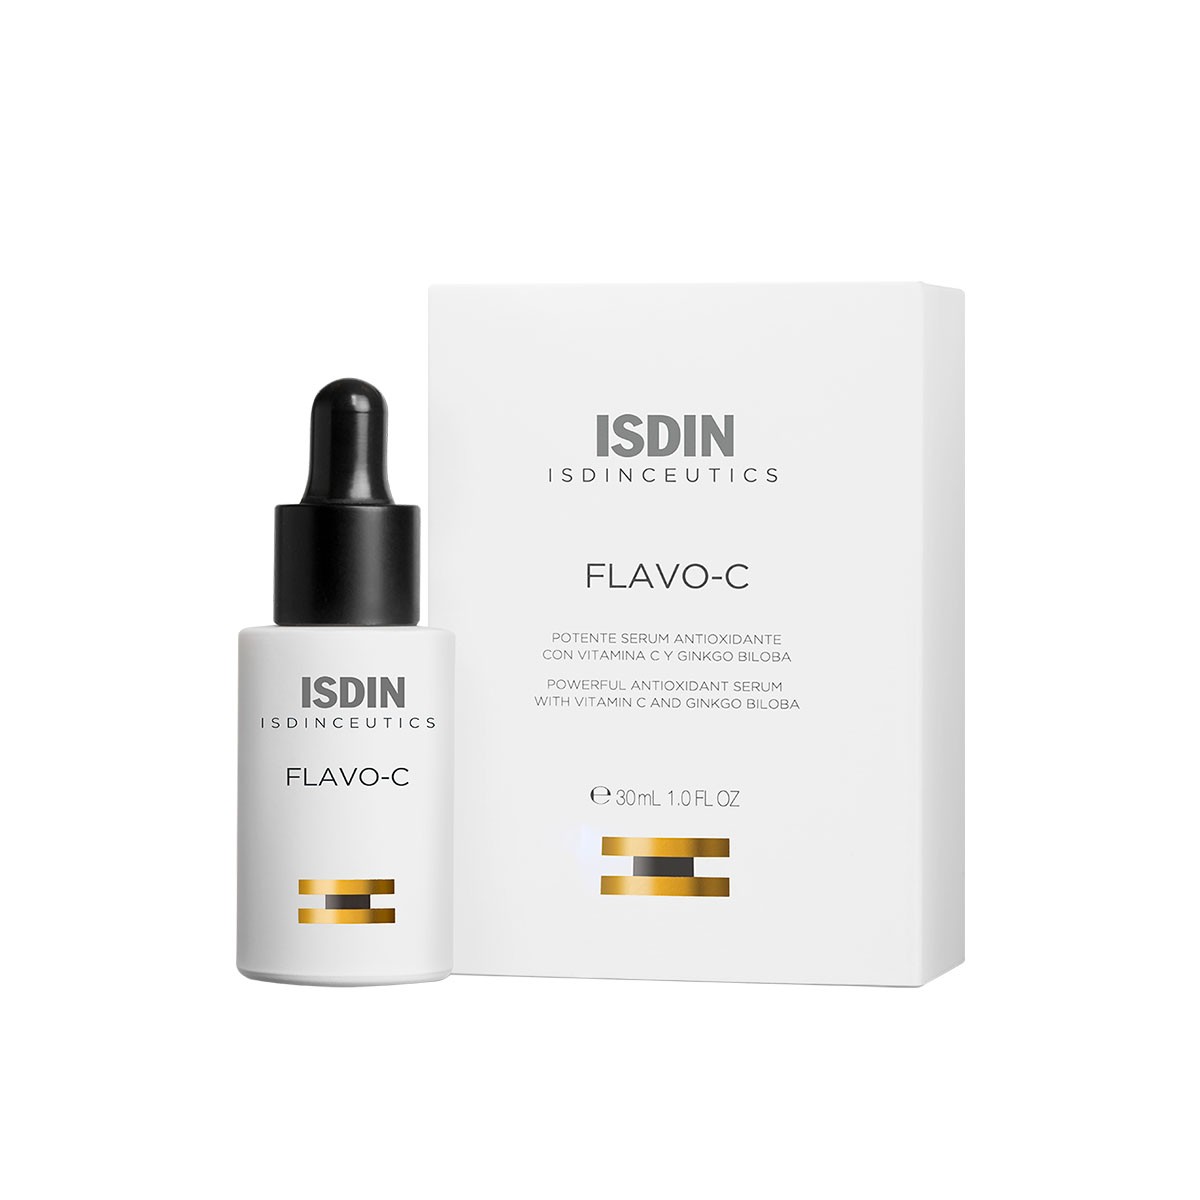 Isdinceutics Flavo-C Serum, 15ml.